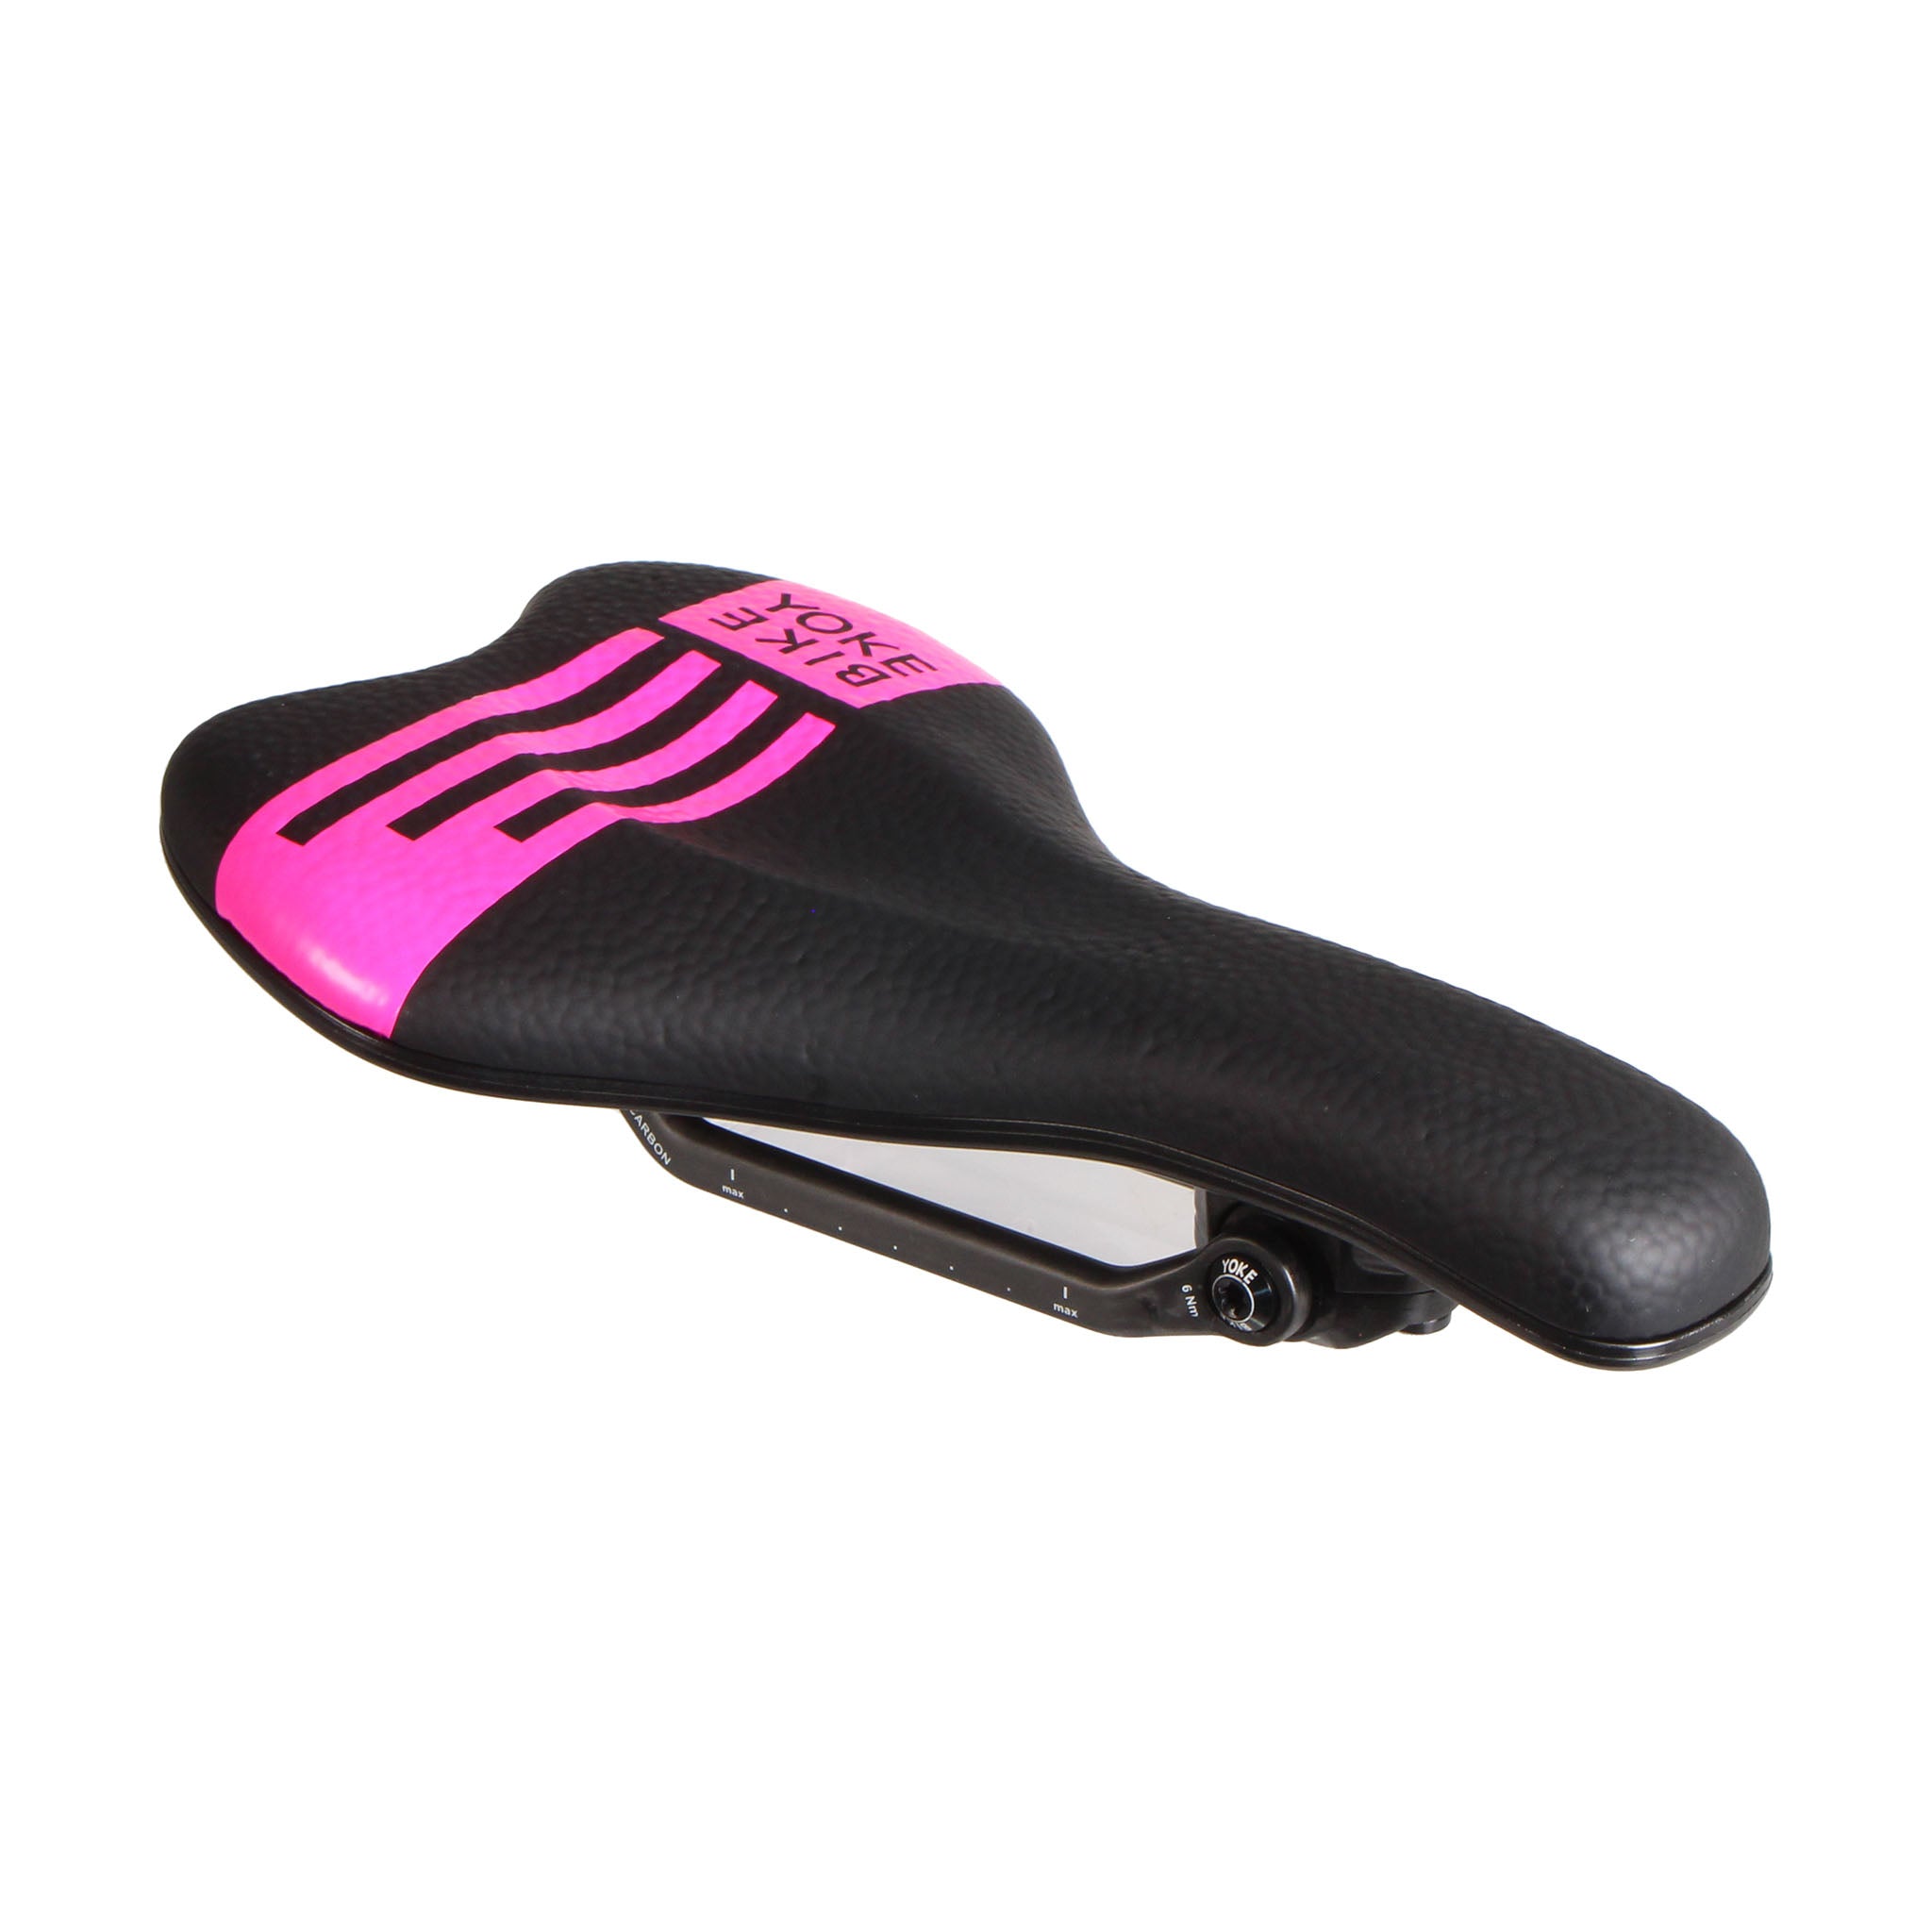 Bike Yoke Sagma Carbon Saddle 142 - Black/Pink